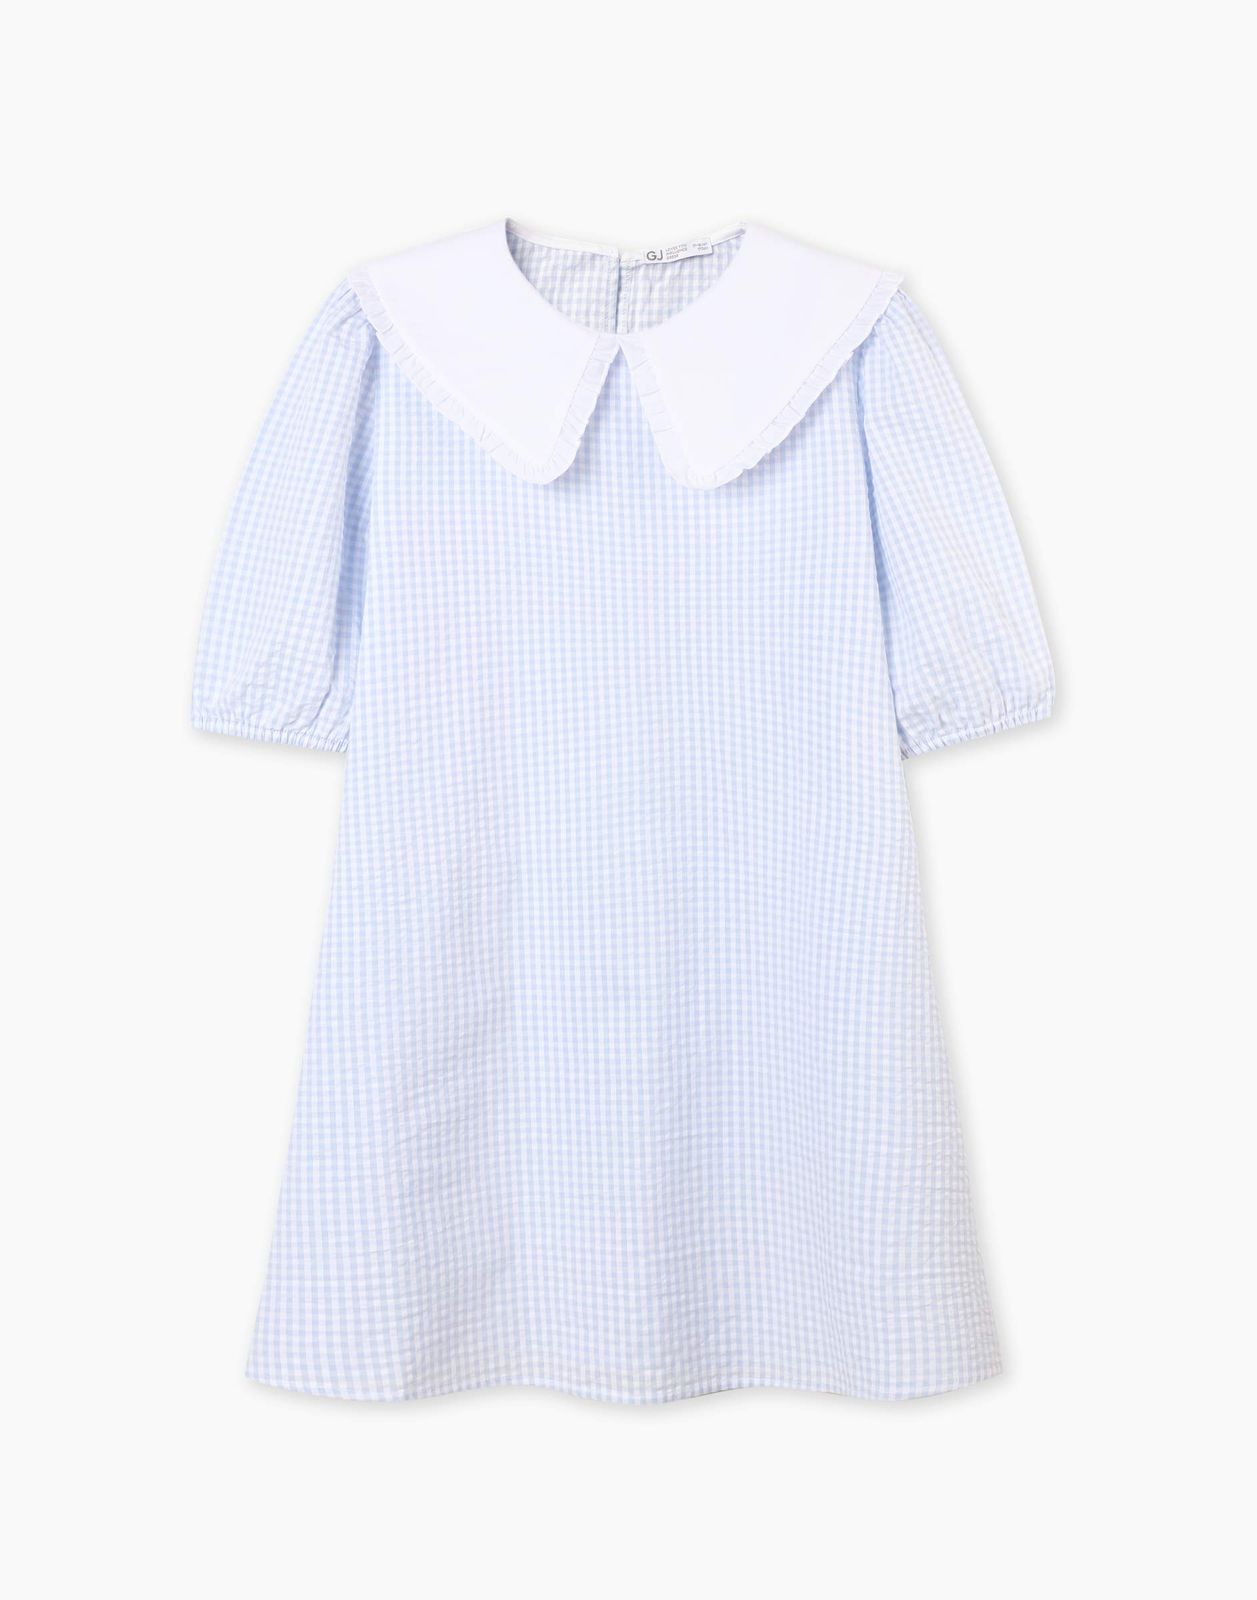 Платье детское Gloria Jeans GDR028214, голубой/белый, 152